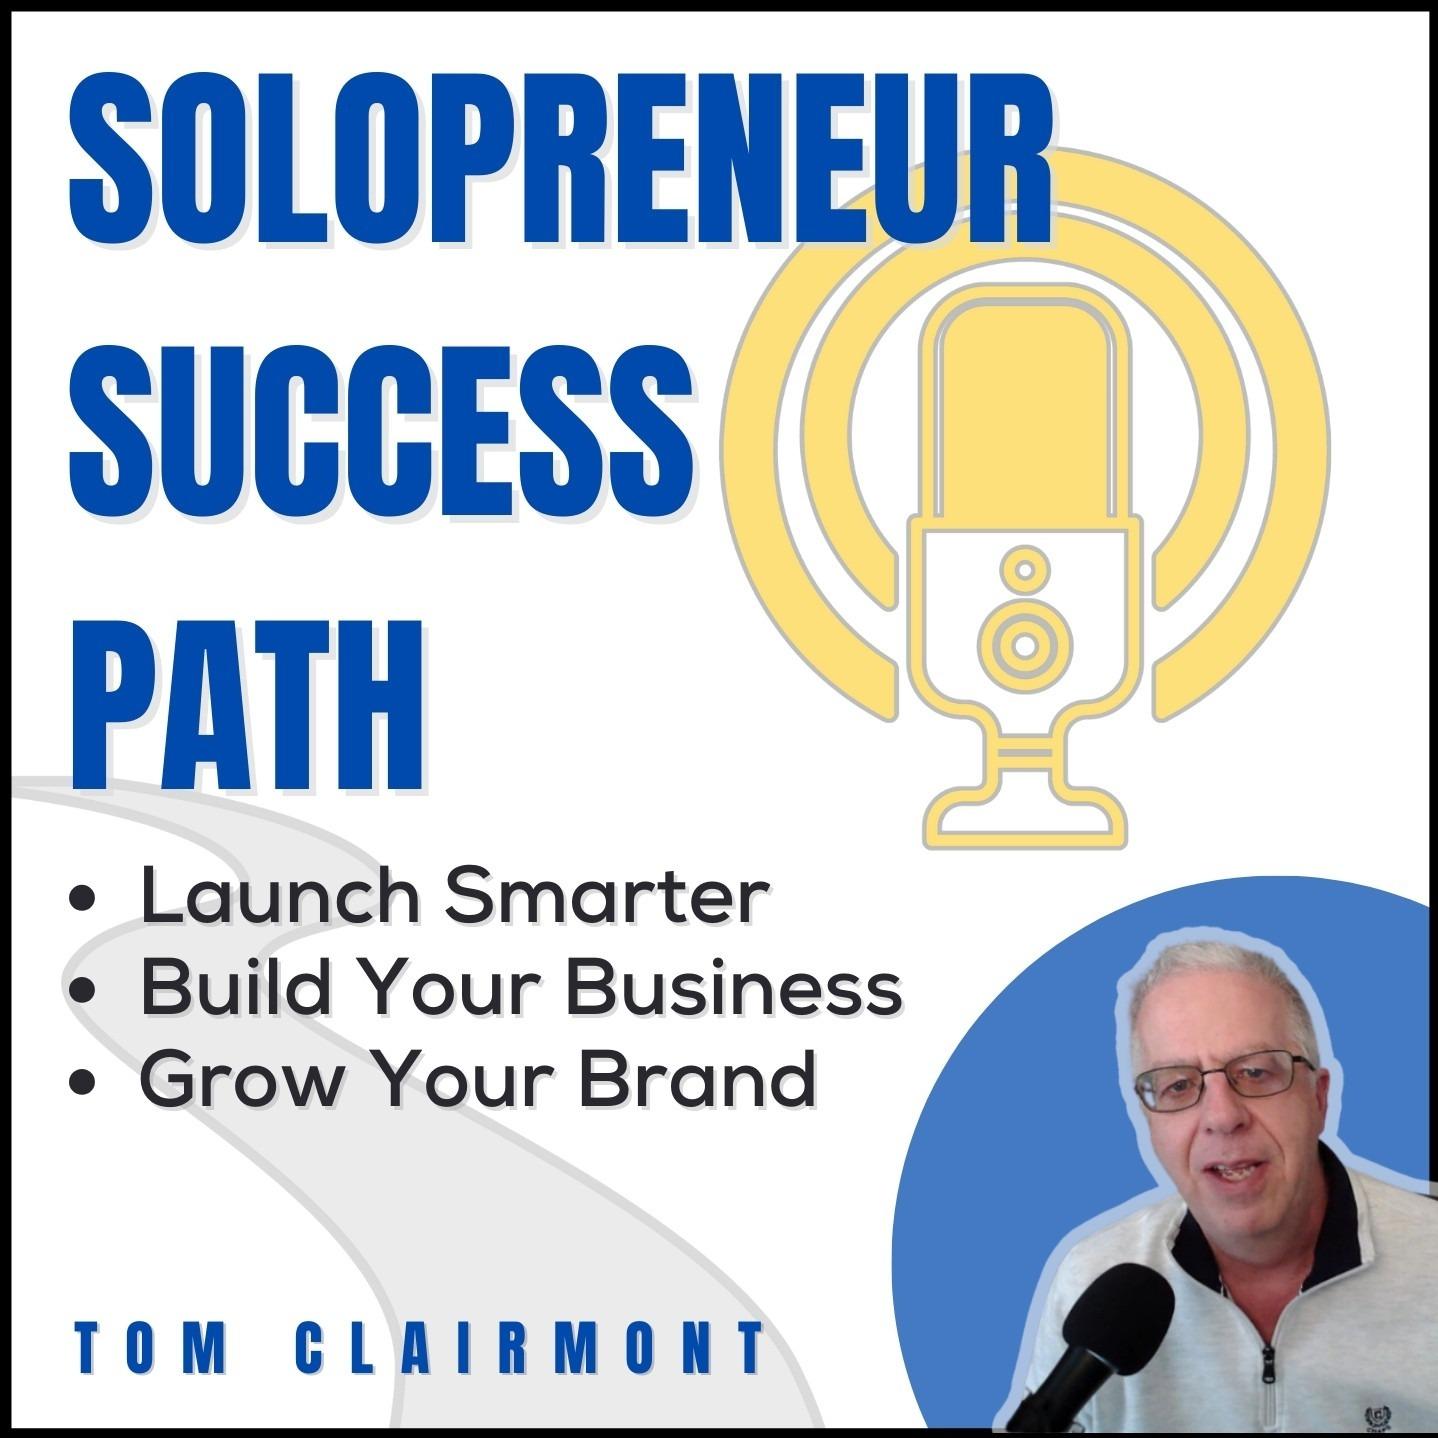 Have A Profitable Online Business | Solopreneur Success Plan Training